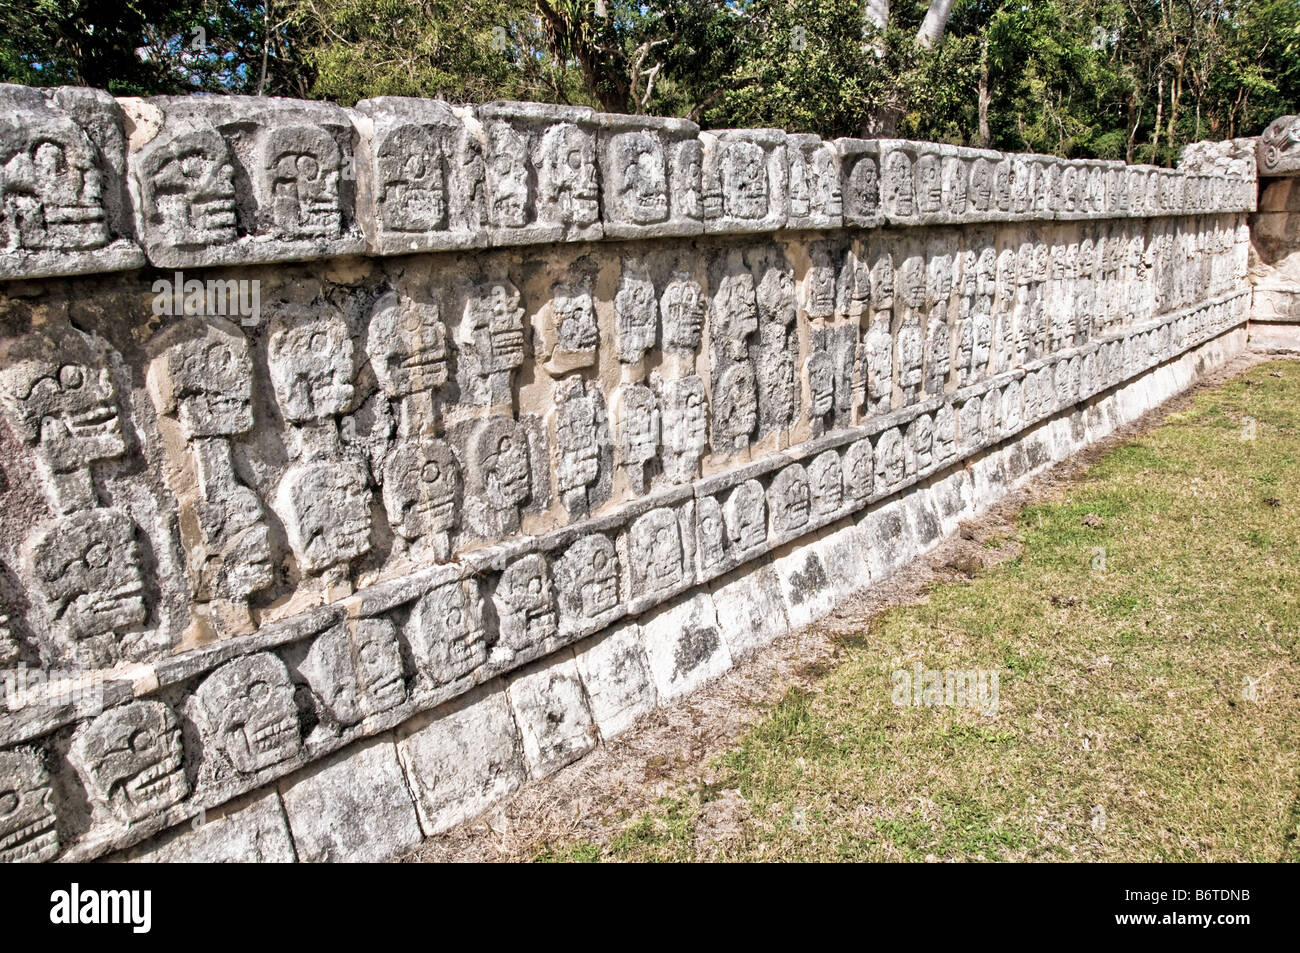 CHICHÉN ITZÁ, México - Una pared baja con cráneos de piedra tallados intrincadamente en las antiguas ruinas mayas en Chichén Itzá, Yucatán, México. Chichén Itzá, ubicado en la península de Yucatán en México, es un importante sitio arqueológico que muestra la rica historia y el conocimiento científico avanzado de la antigua civilización maya. Es más conocida por la Pirámide de Kukulkan, o 'El Castillo', una estructura de cuatro lados con 91 escalones a cada lado, que culminan en un solo escalón en la parte superior para representar los 365 días del año solar. Foto de stock